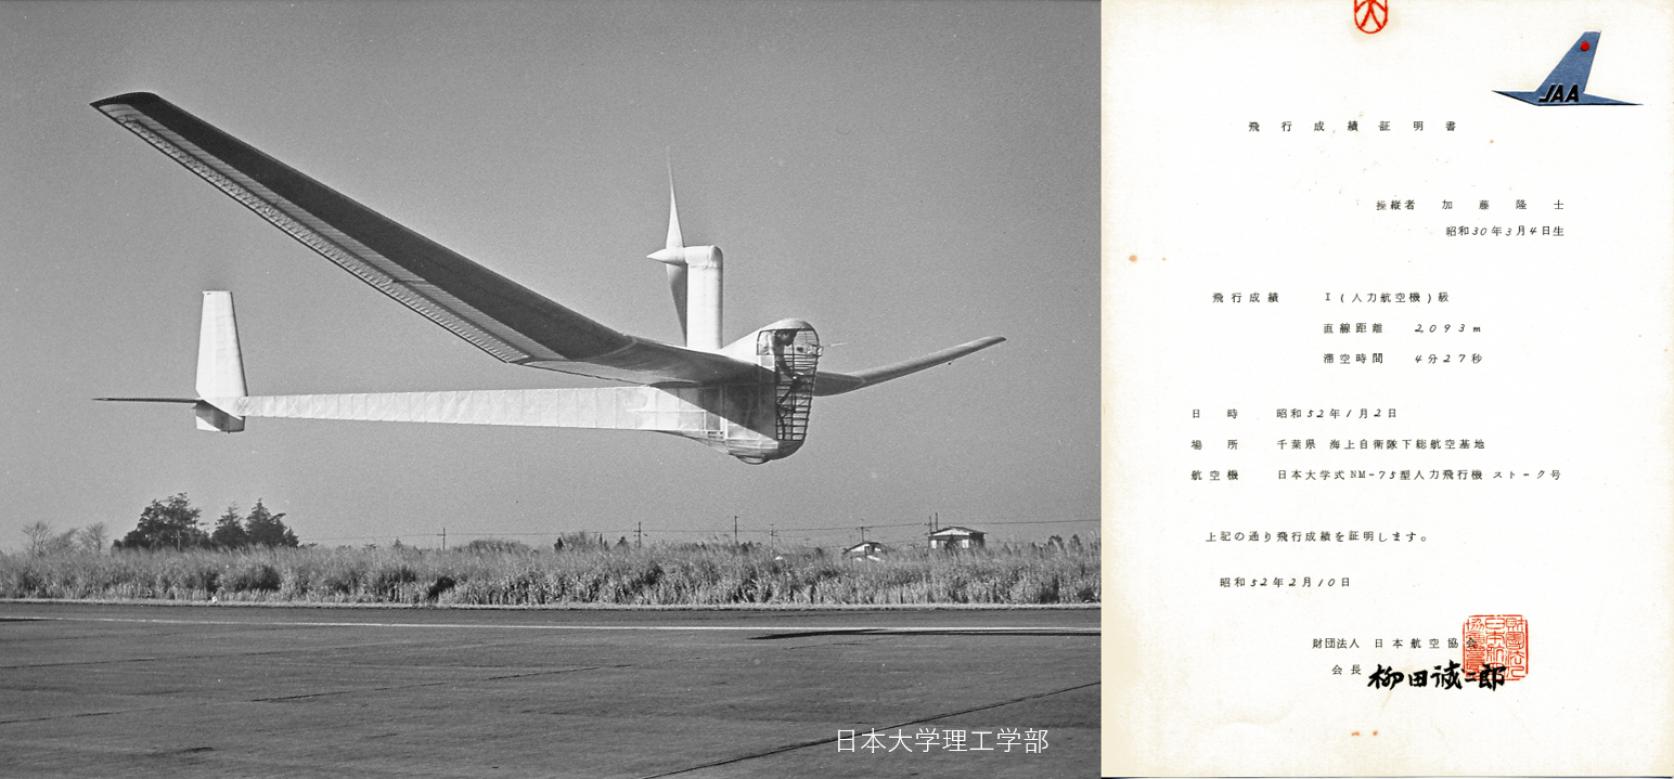 【今日は何の日】1977年1月2日  日本大学式NM-75型人力飛行機 STORK(ストーク) Ｂ世界最高飛距離を記録